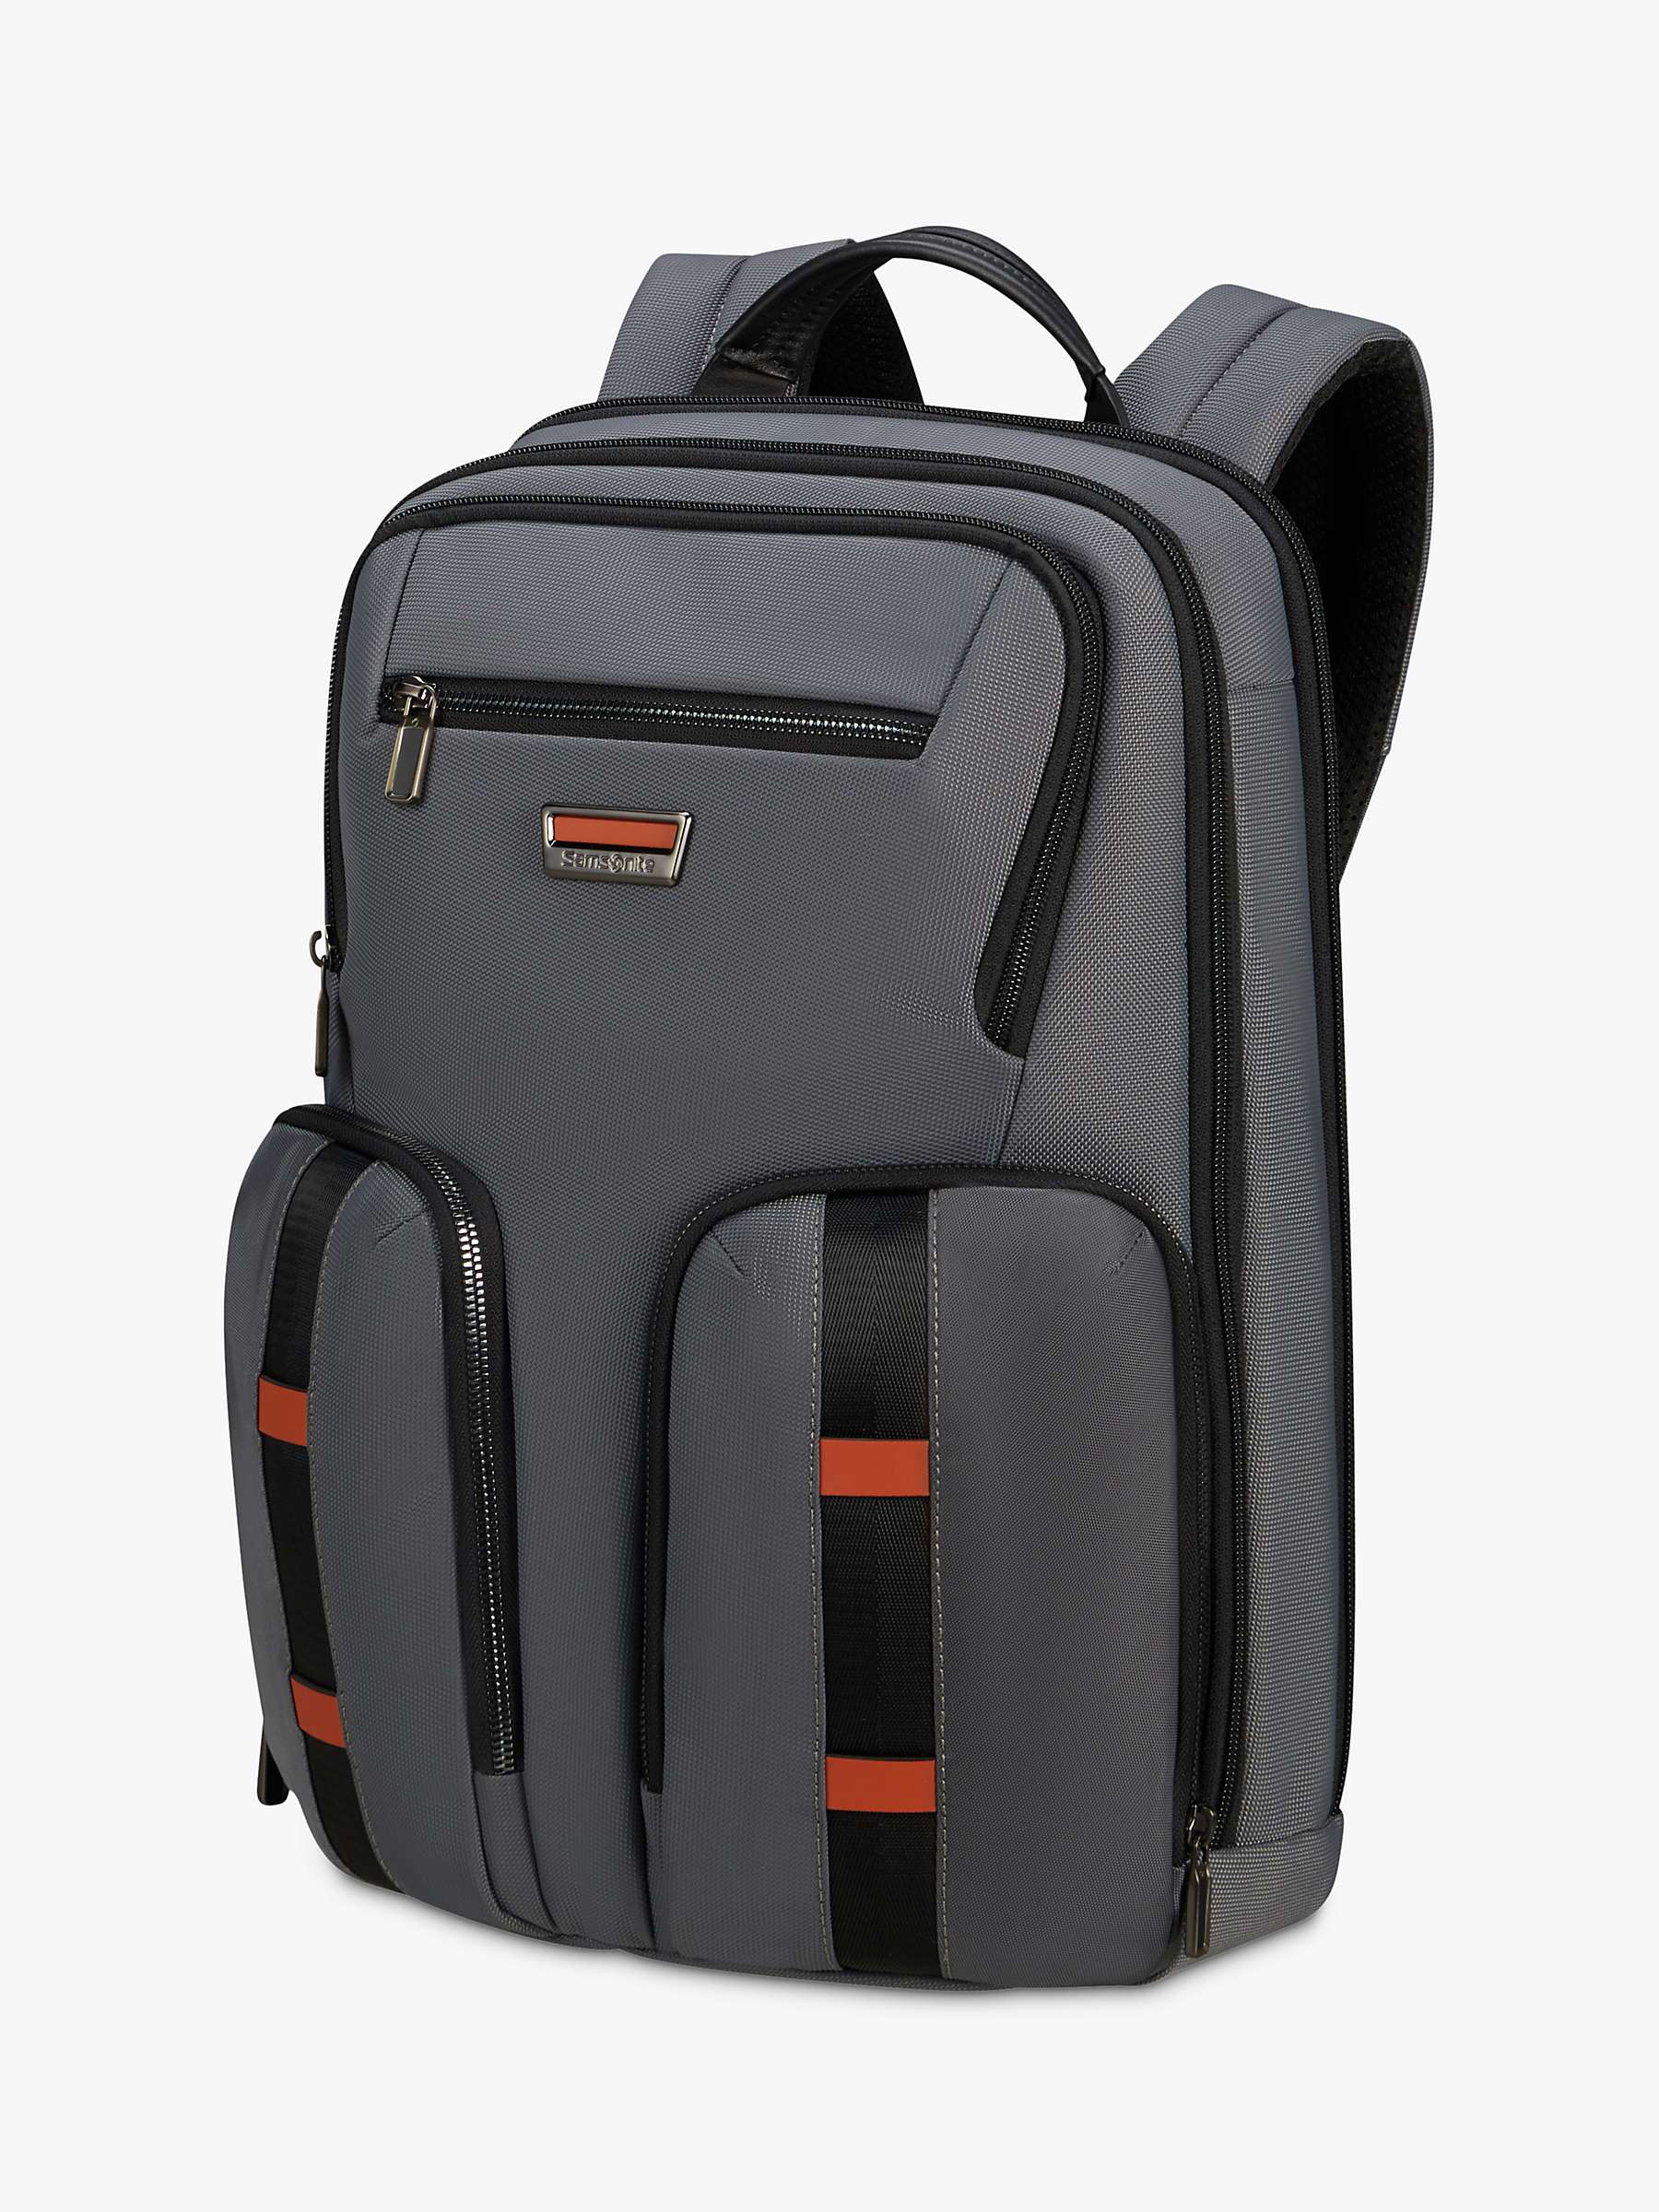 Buy Samsonite Urban Eye 15.6" Backpack, Grey Online at johnlewis.com